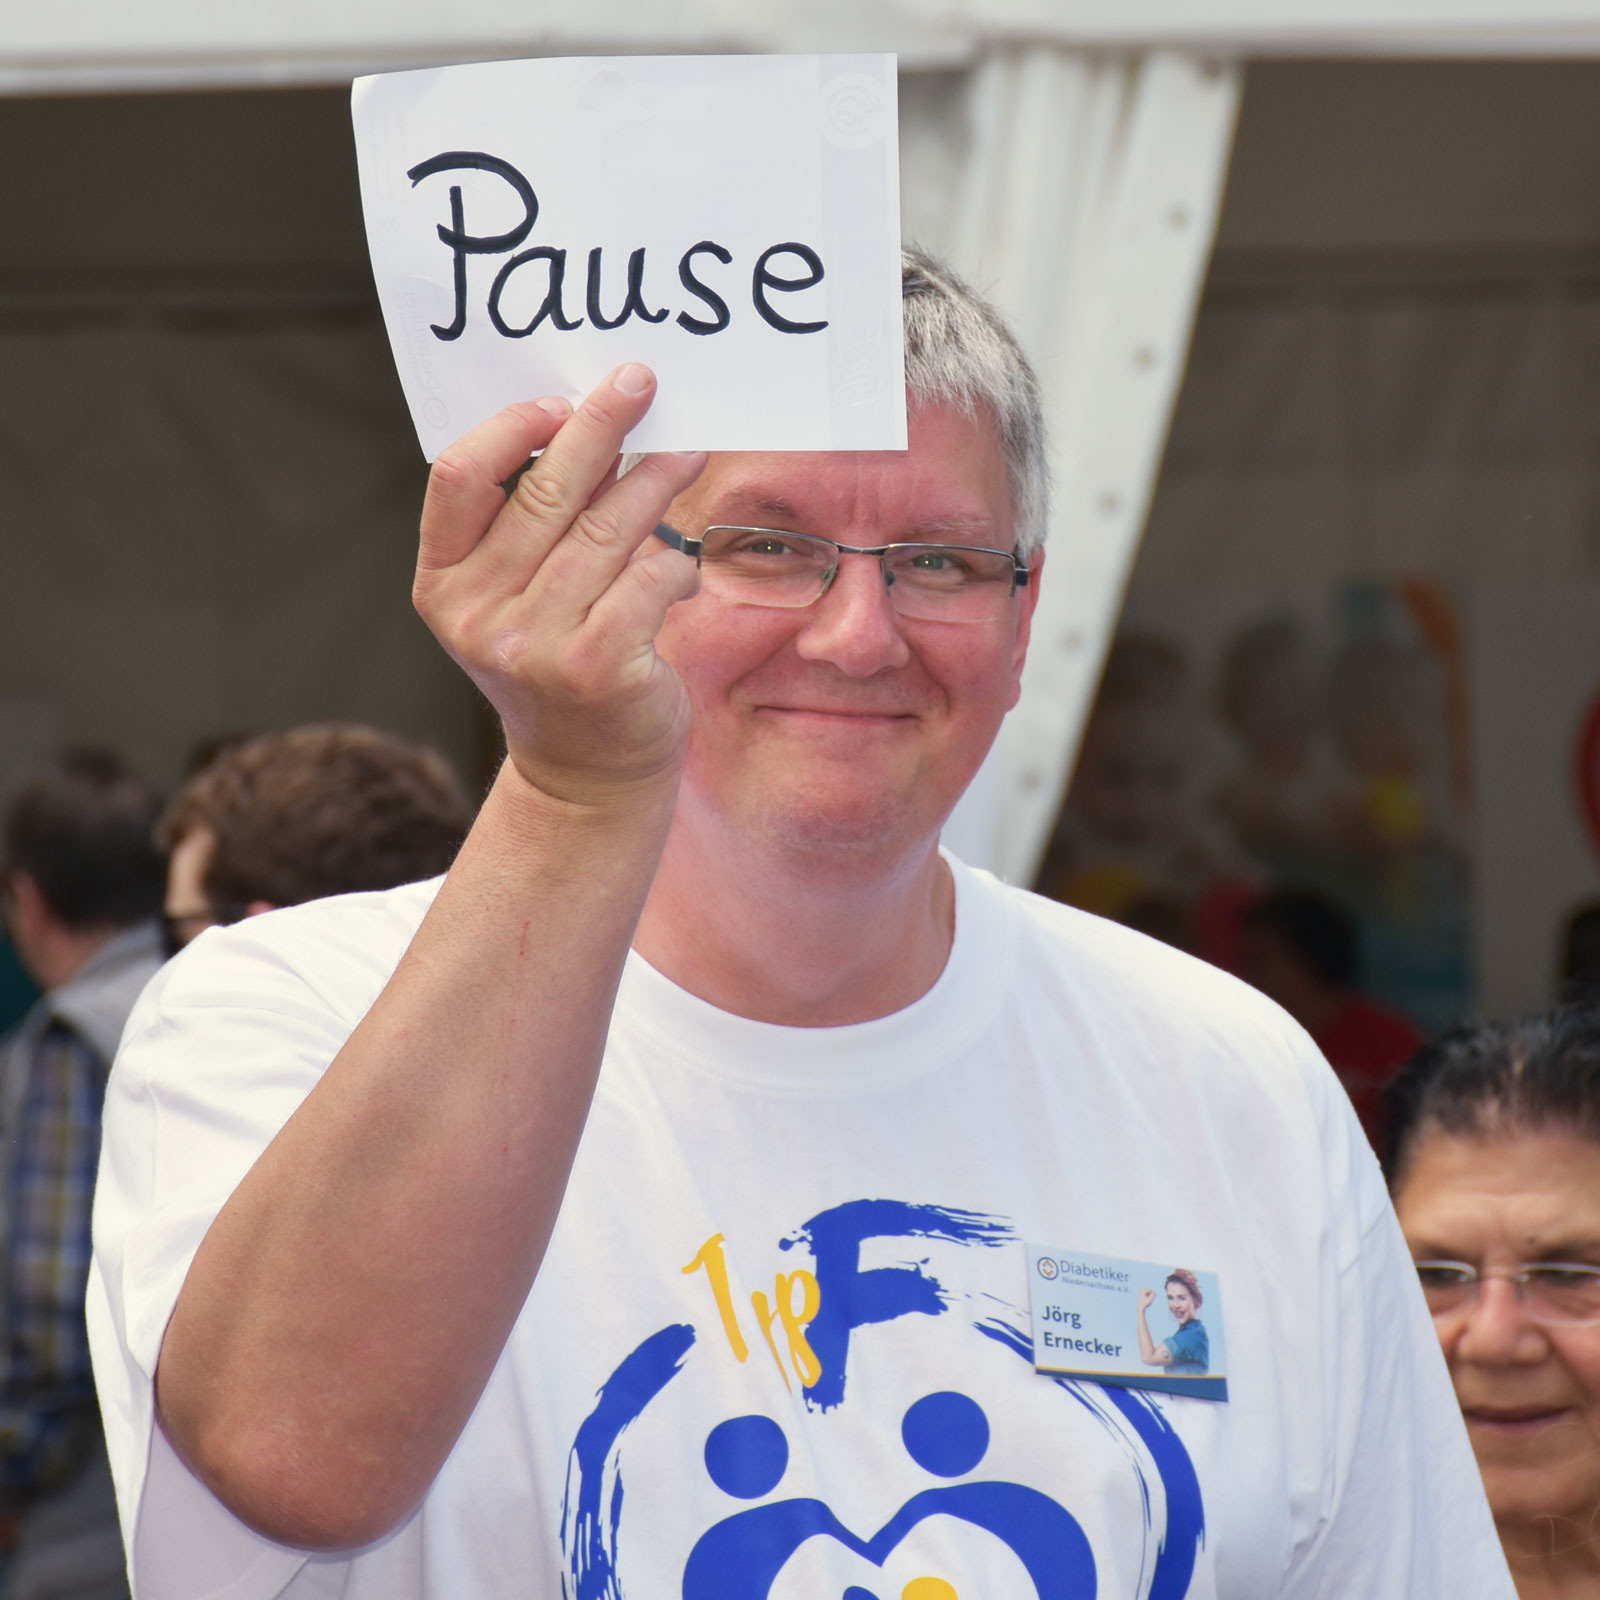 Ein Mann hält ein Schild mit der Aufschrift "Pause" hoch